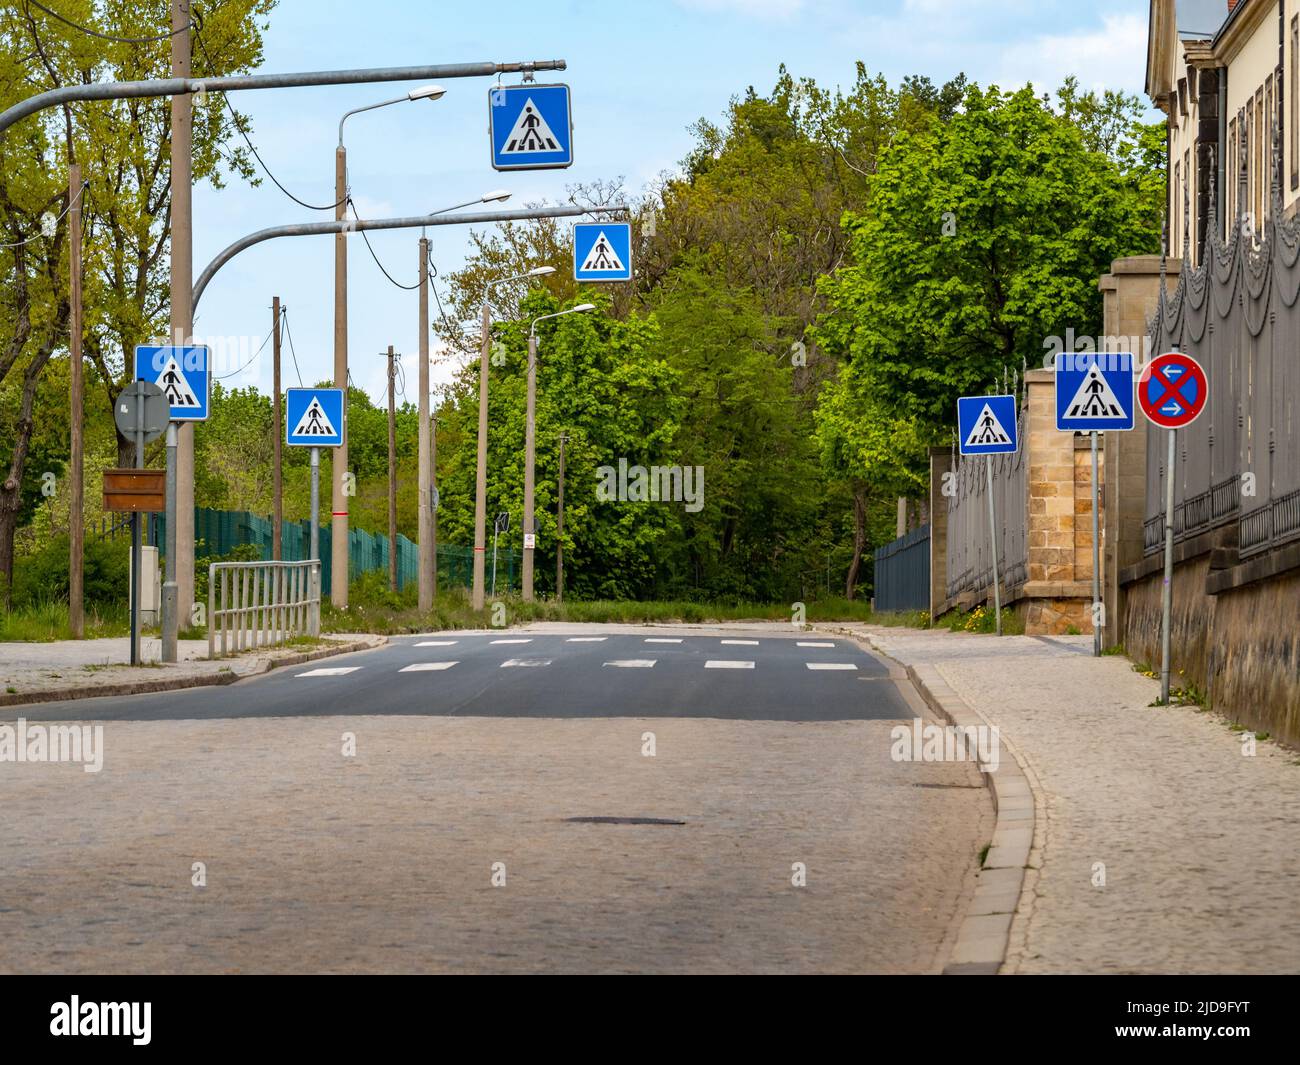 Fußgängerüberweg mit vielen Verkehrsschildern. Viele blaue Schilder neben der Straße, um Autofahrer vorsichtig und vorausschauend zu machen. Stockfoto